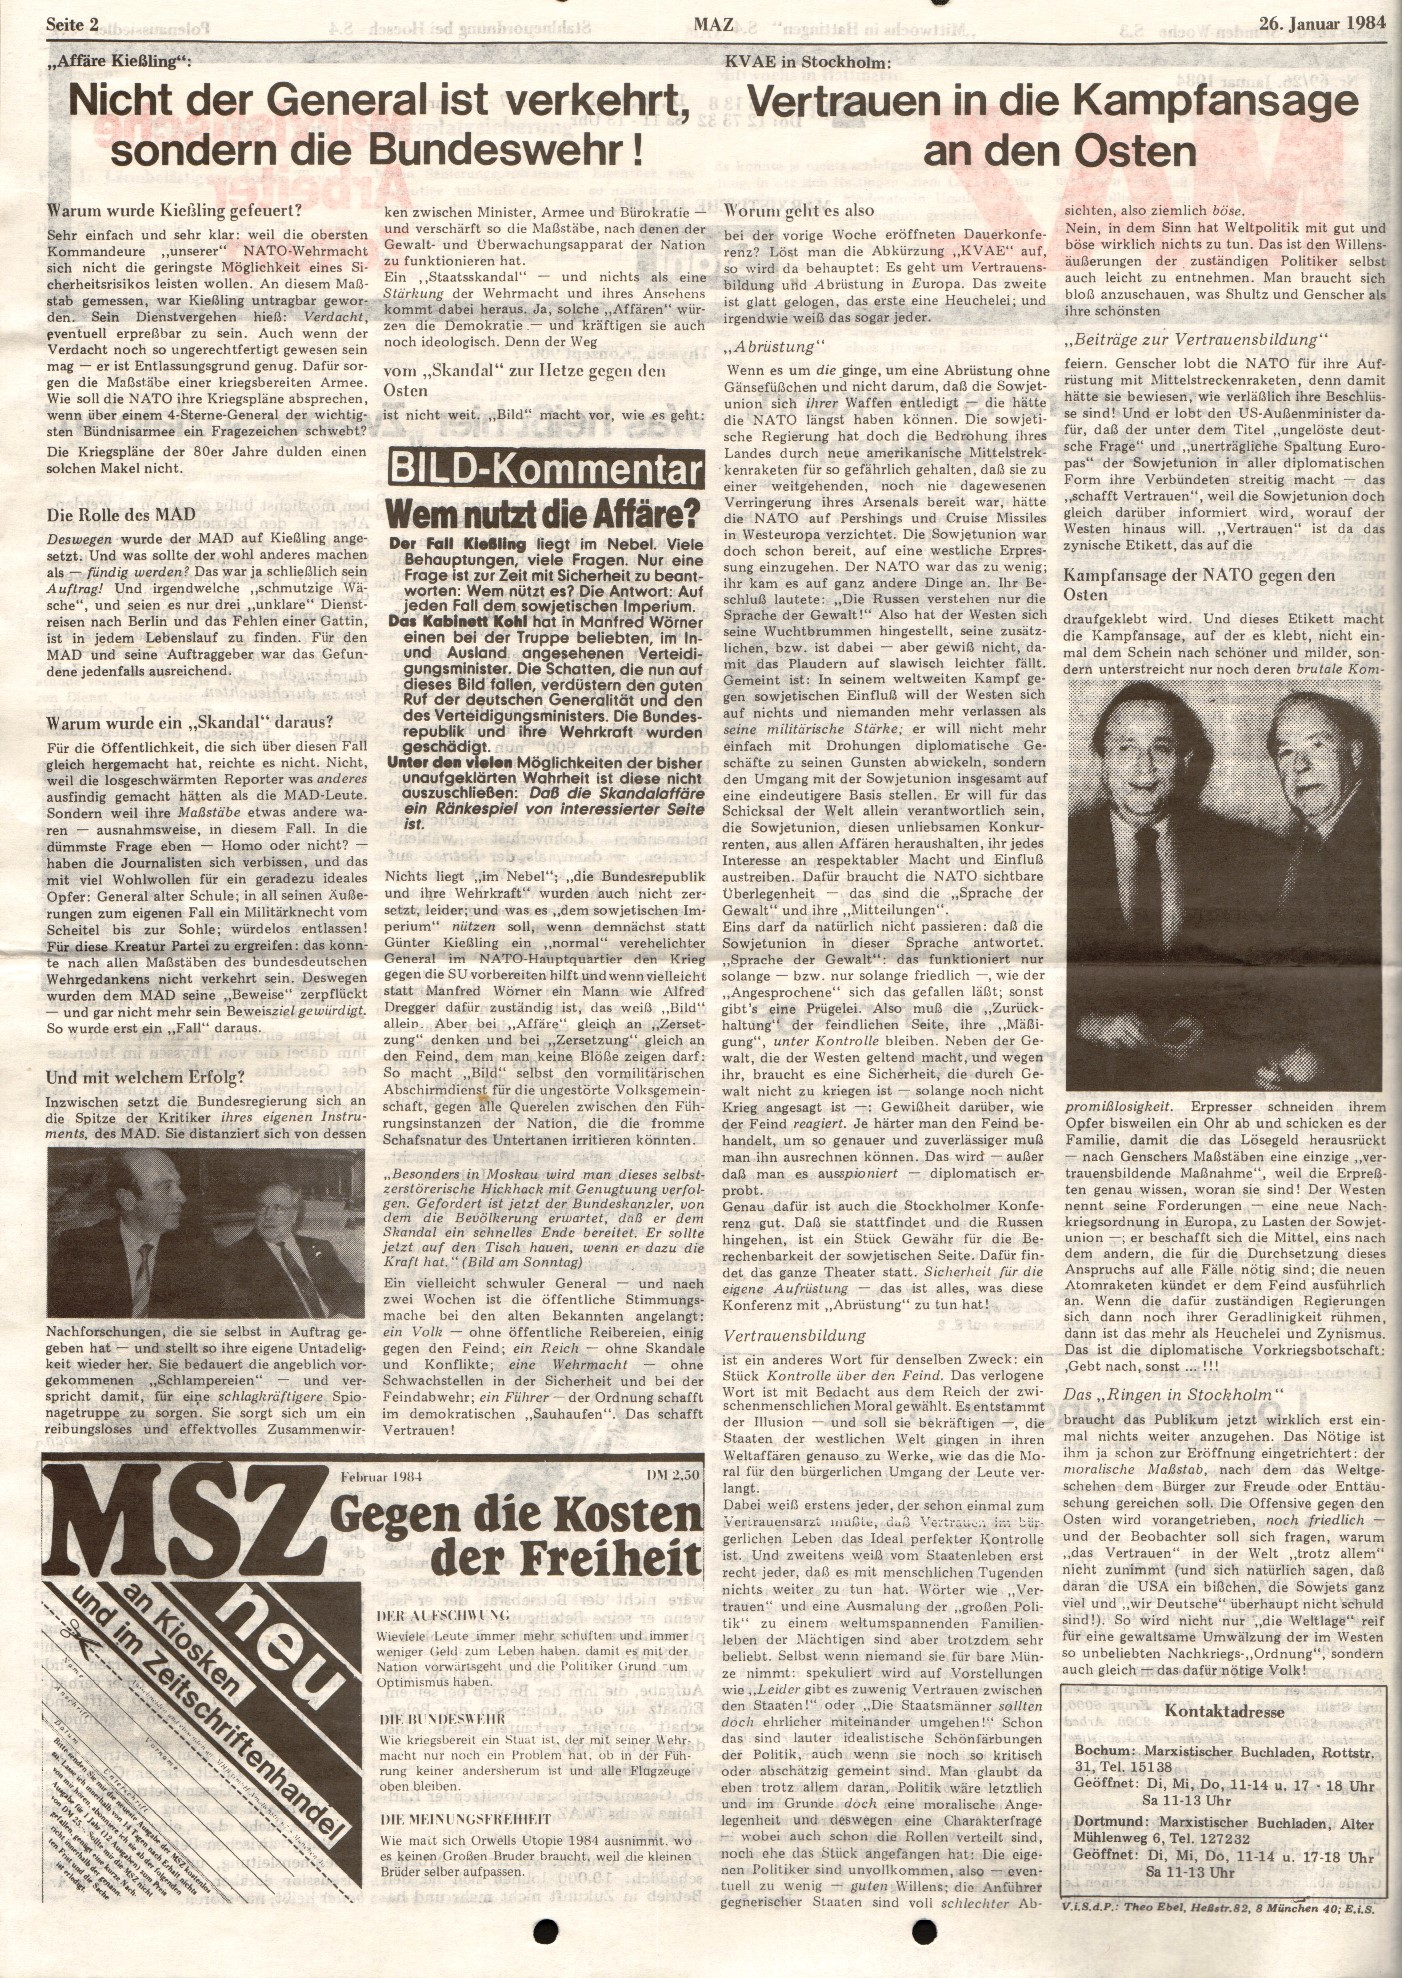 Ruhrgebiet_MG_Marxistische_Arbeiterzeitung_Stahl_19840126_02